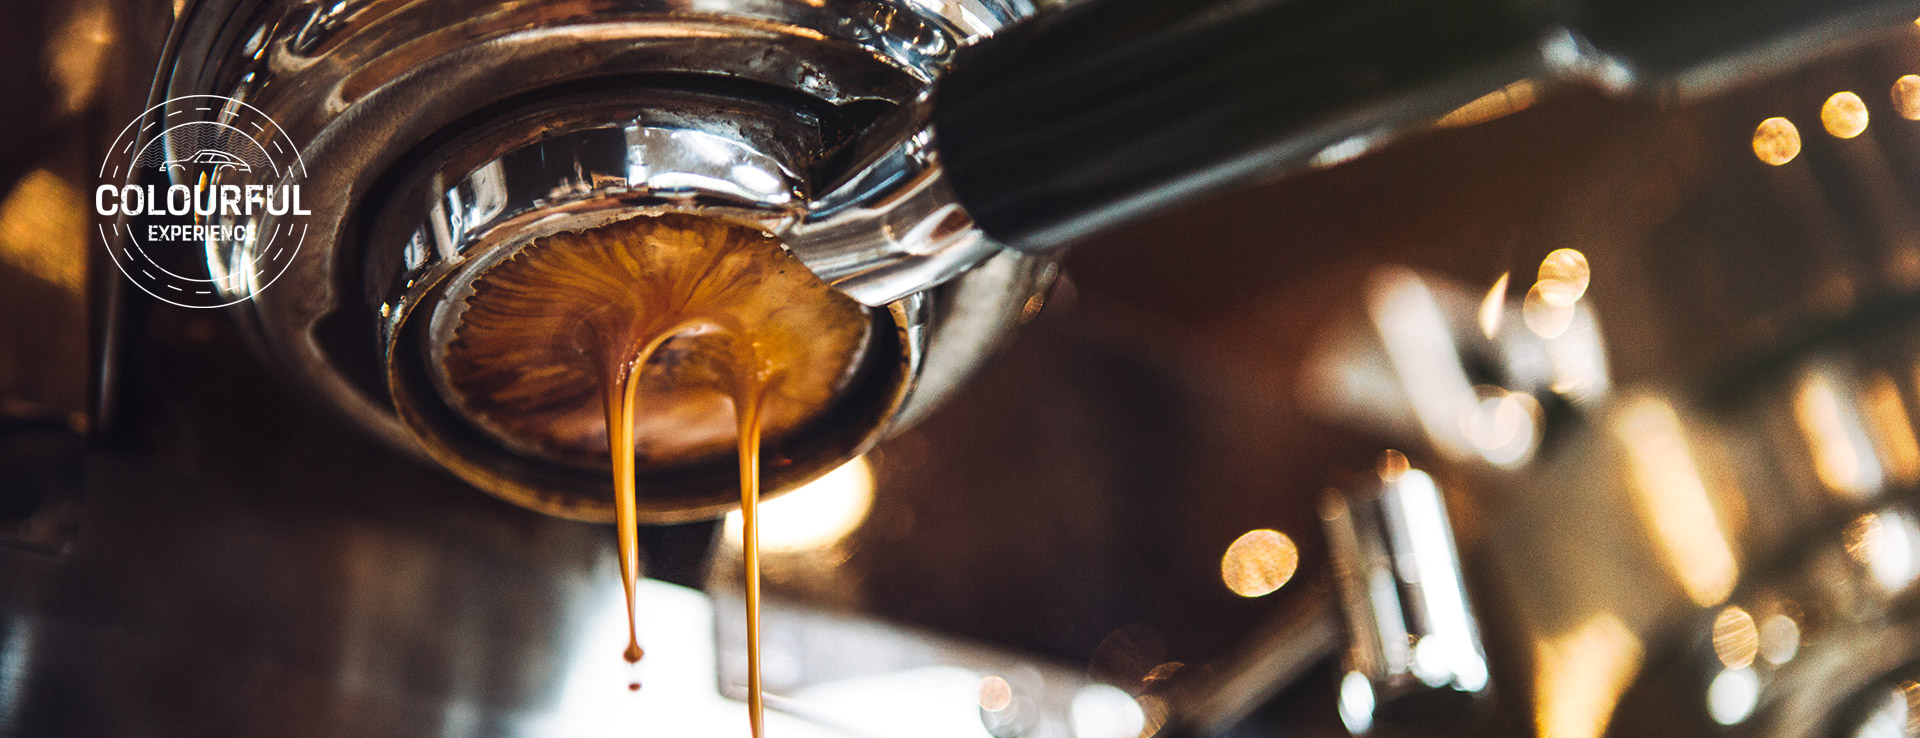 brown espresso coffee dripping through machine